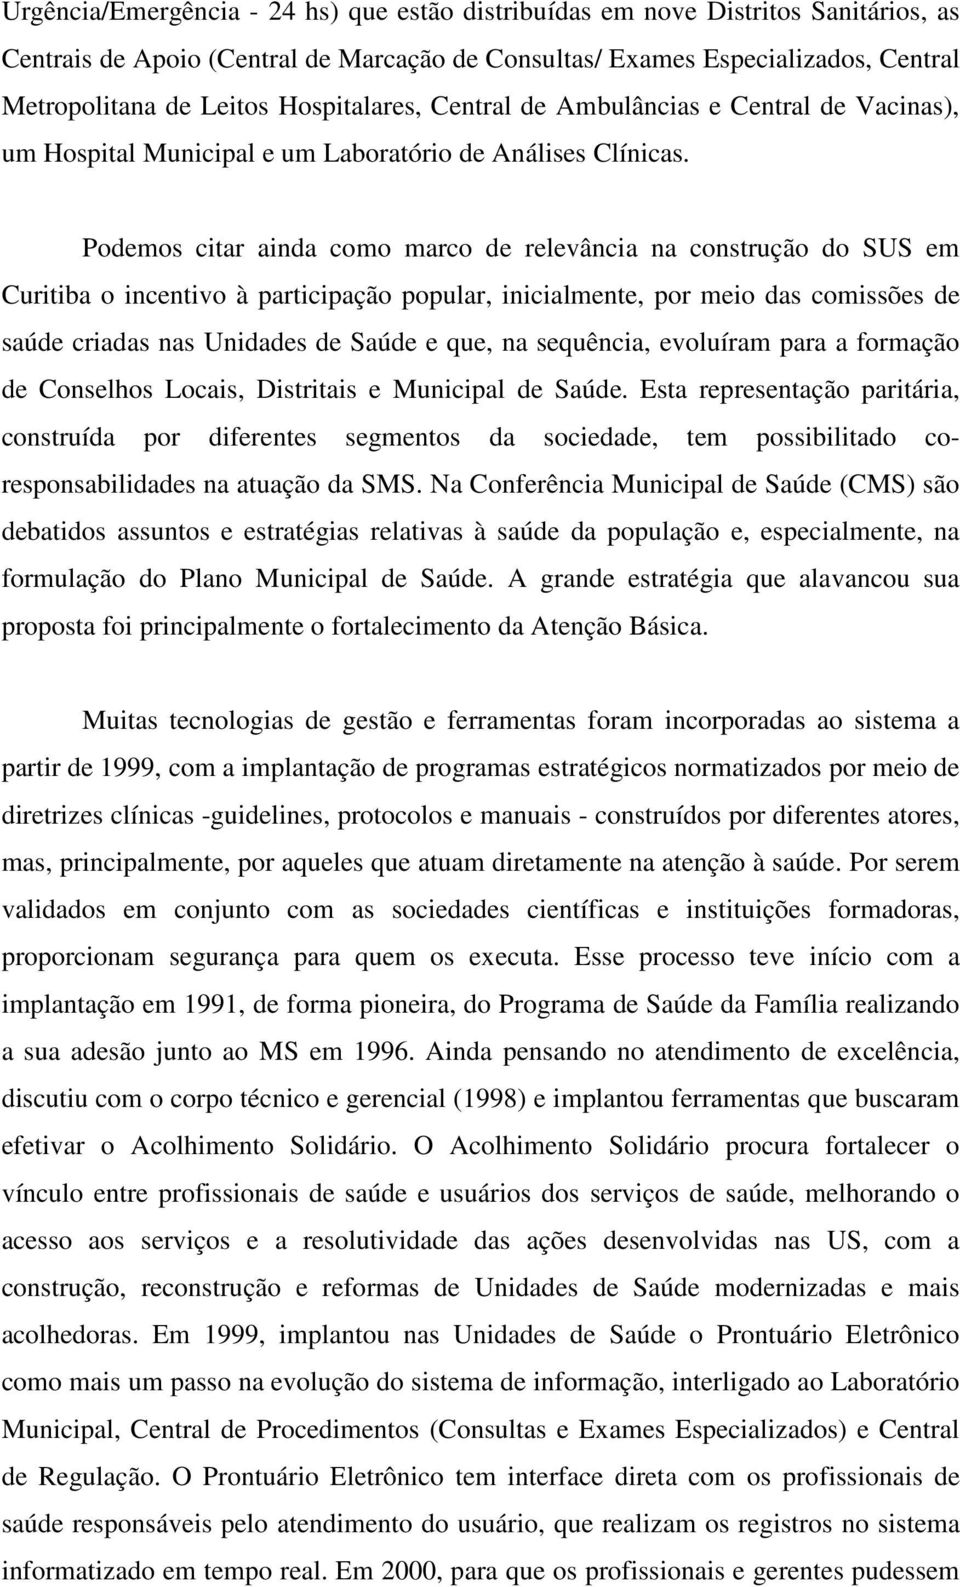 Podemos citar ainda como marco de relevância na construção do SUS em Curitiba o incentivo à participação popular, inicialmente, por meio das comissões de saúde criadas nas Unidades de Saúde e que, na